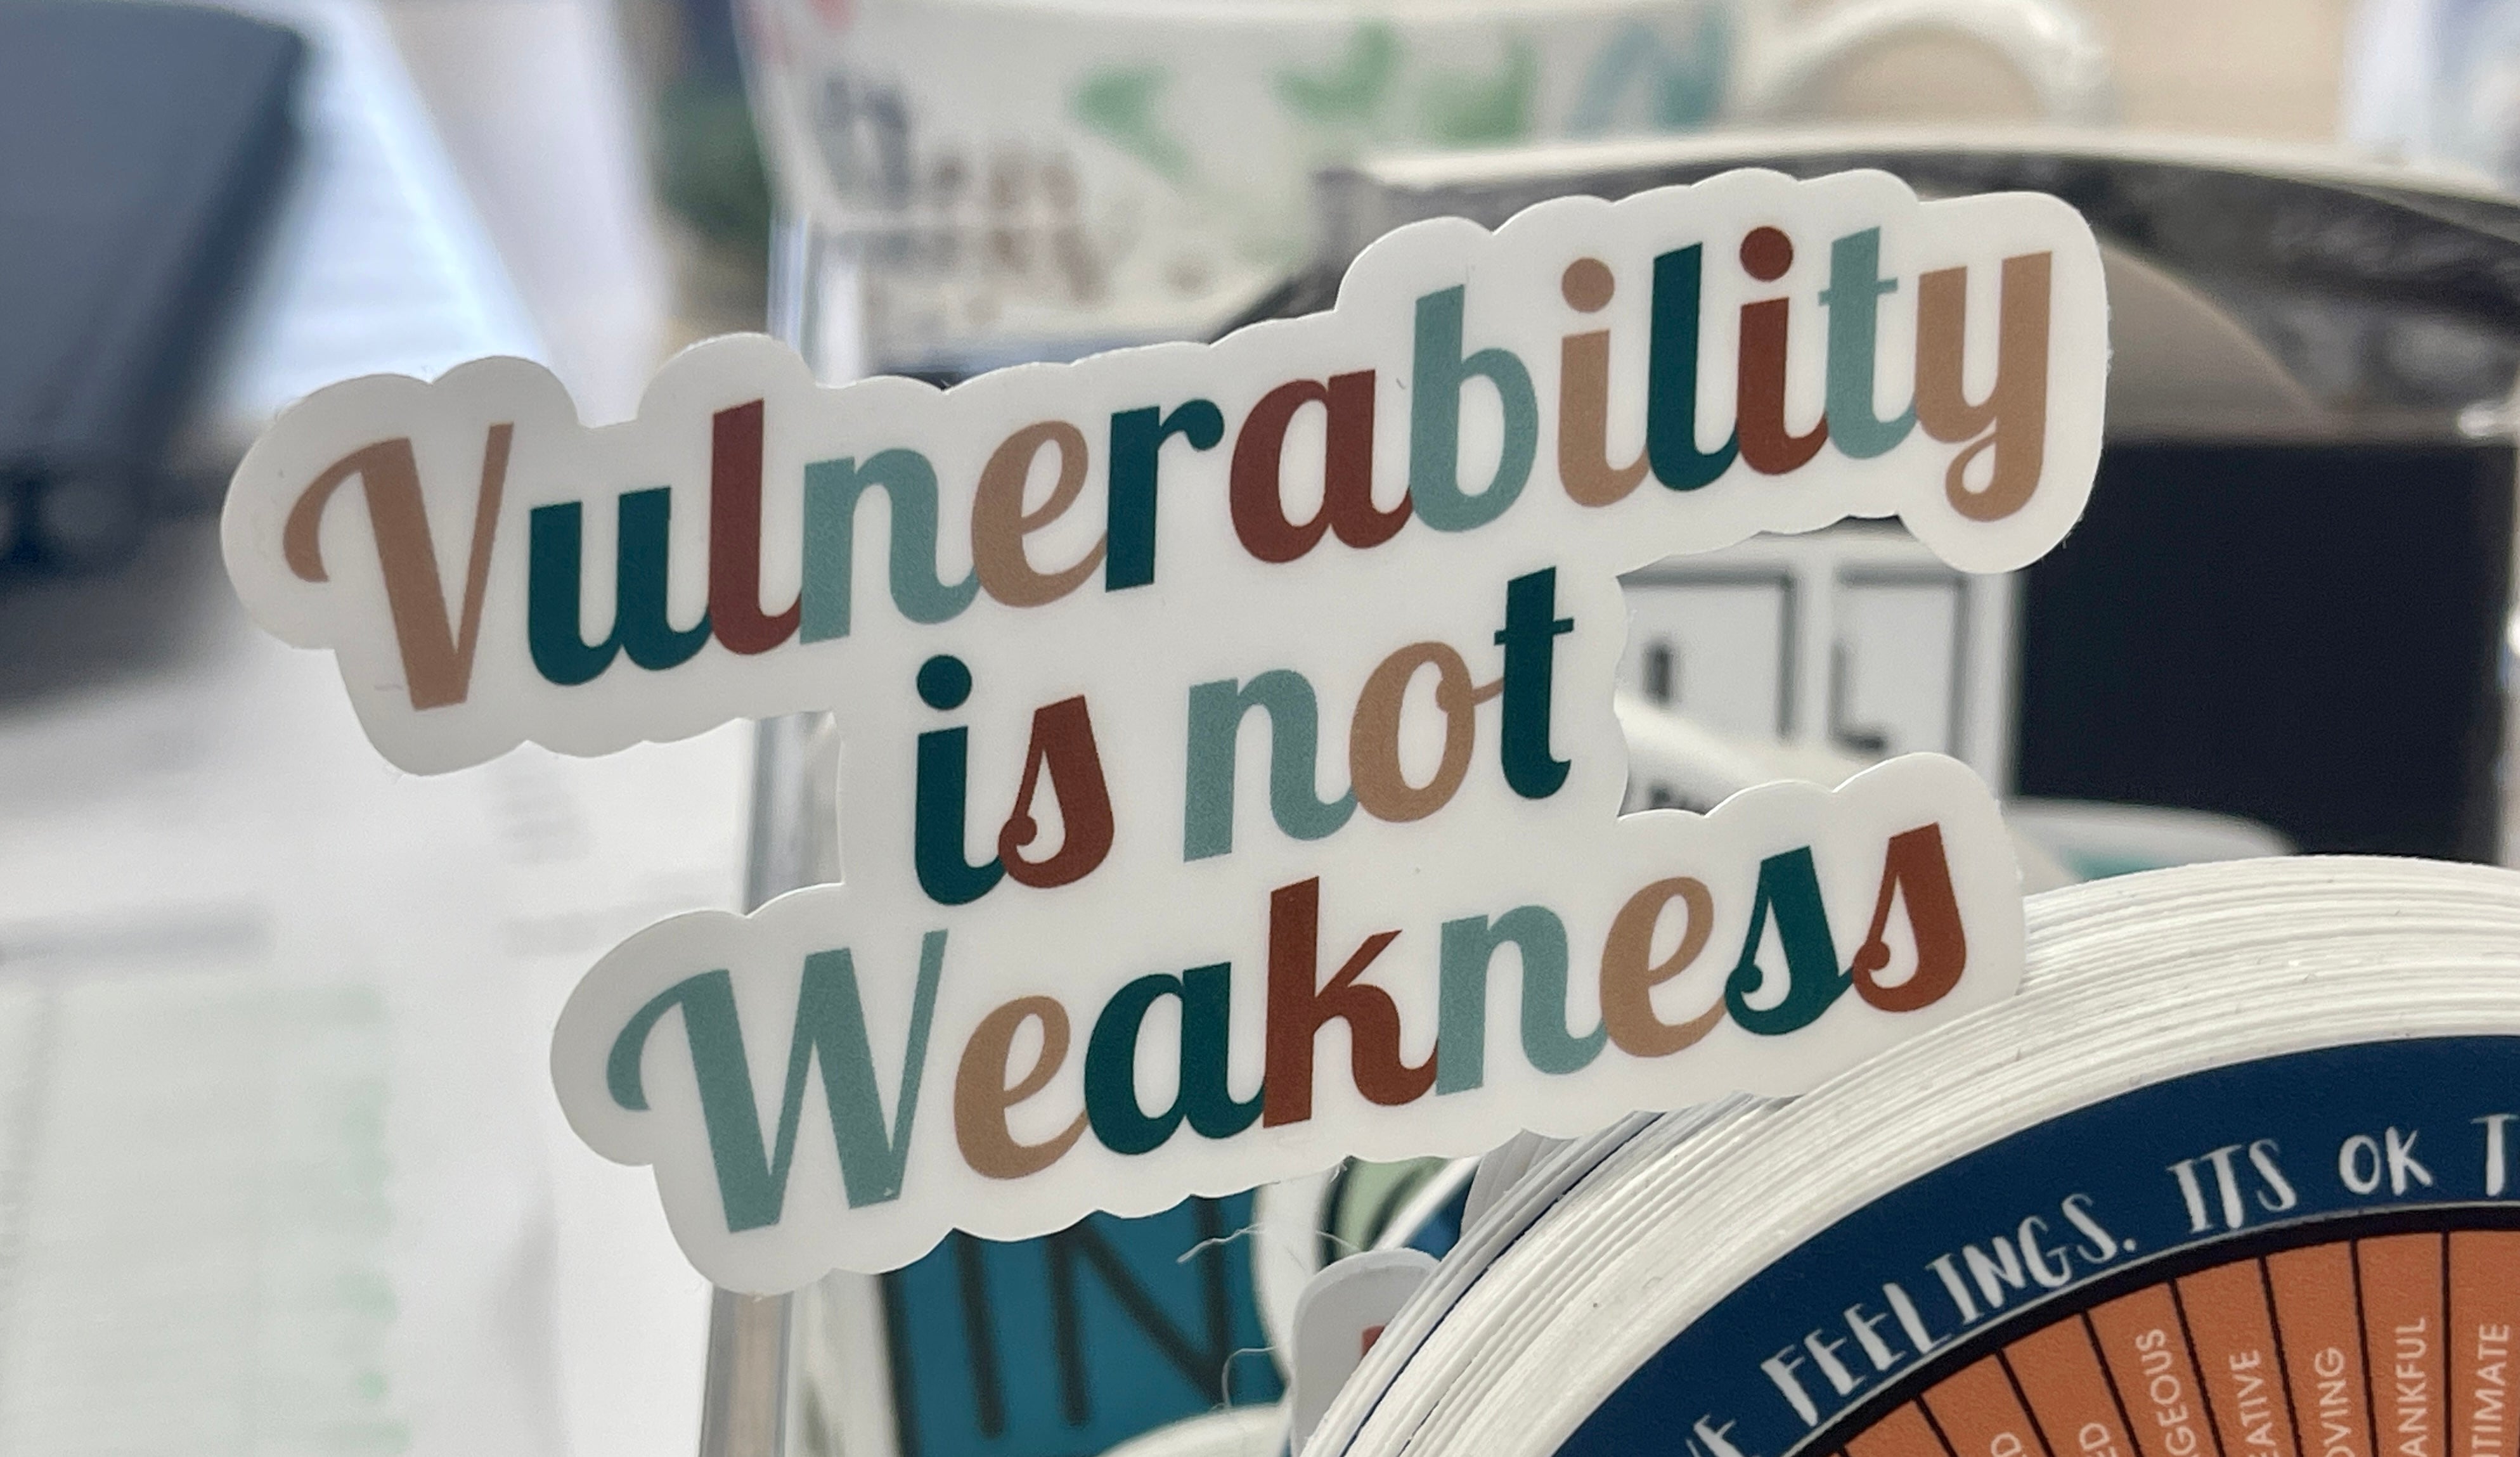 Vulnerability is not weakness